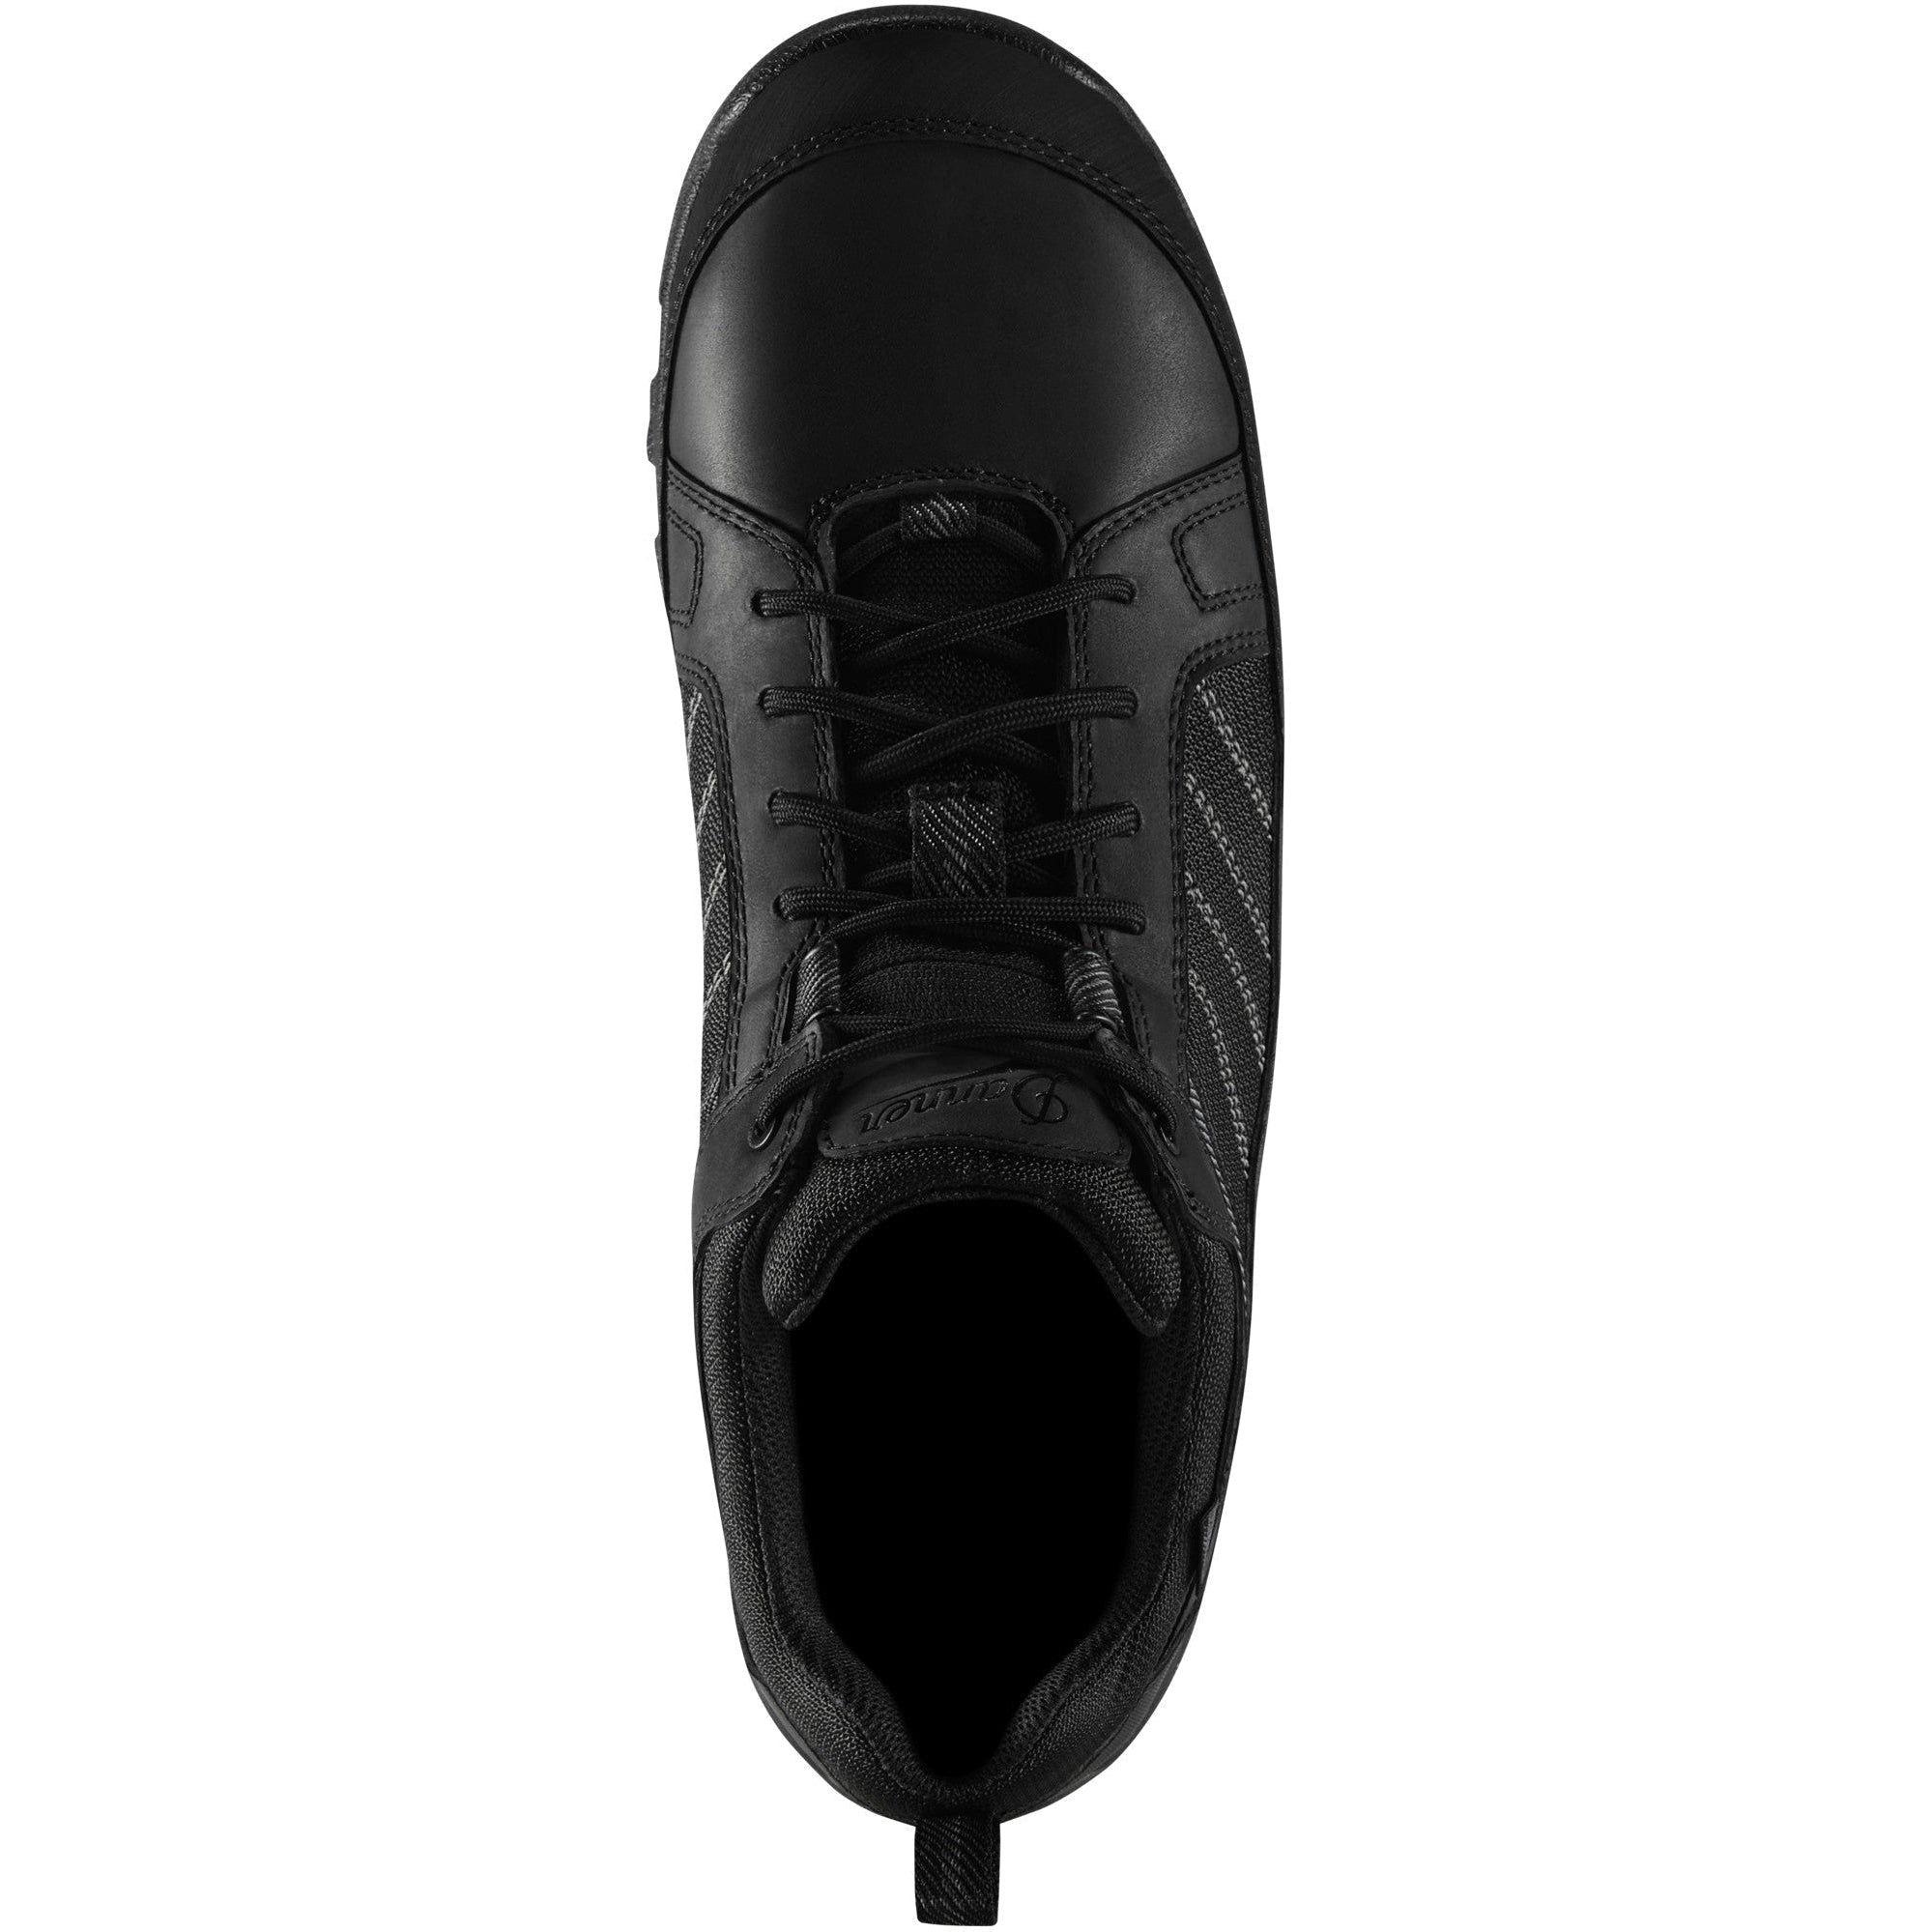 Danner Men's Riverside 3" Steel Toe WP Work Boot - Black - 15344  - Overlook Boots